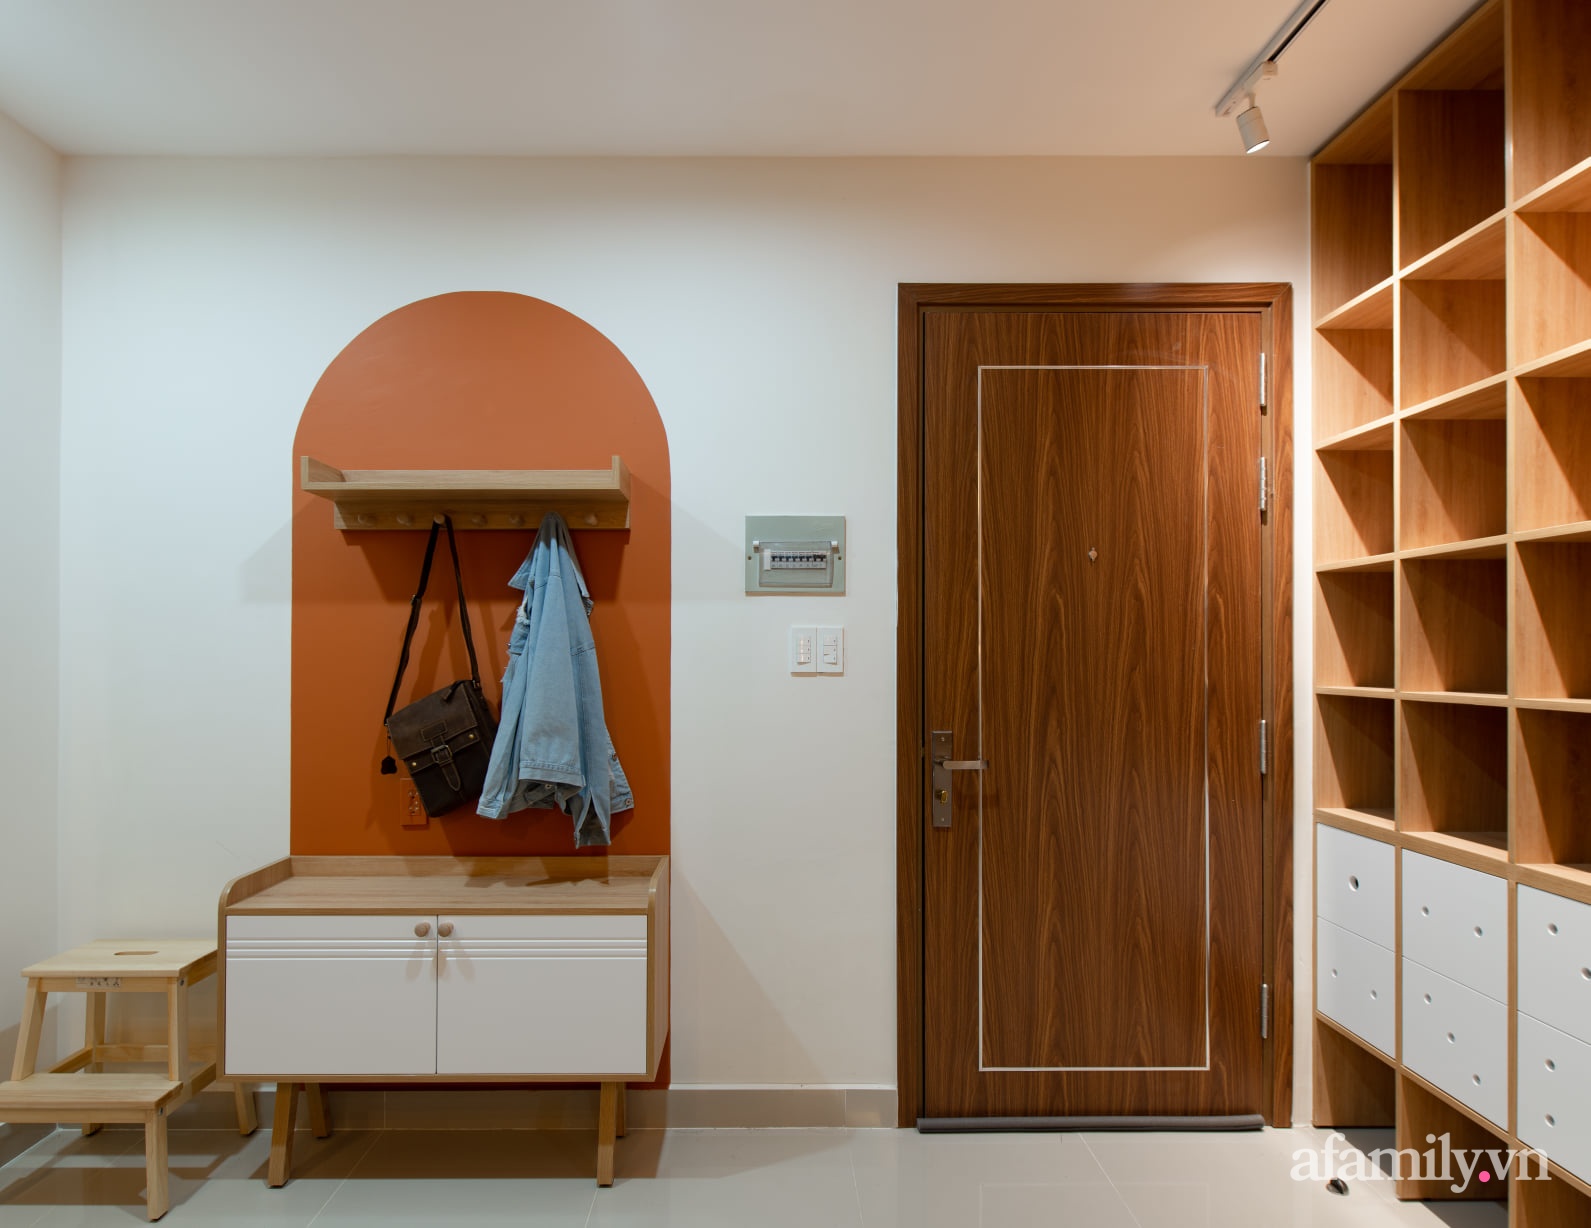 Căn hộ 78m² với tông cam đất ngọt ngào cùng đường cong mềm mại mang hơi hướng phong cách Nhật ở Nha Trang - Ảnh 2.